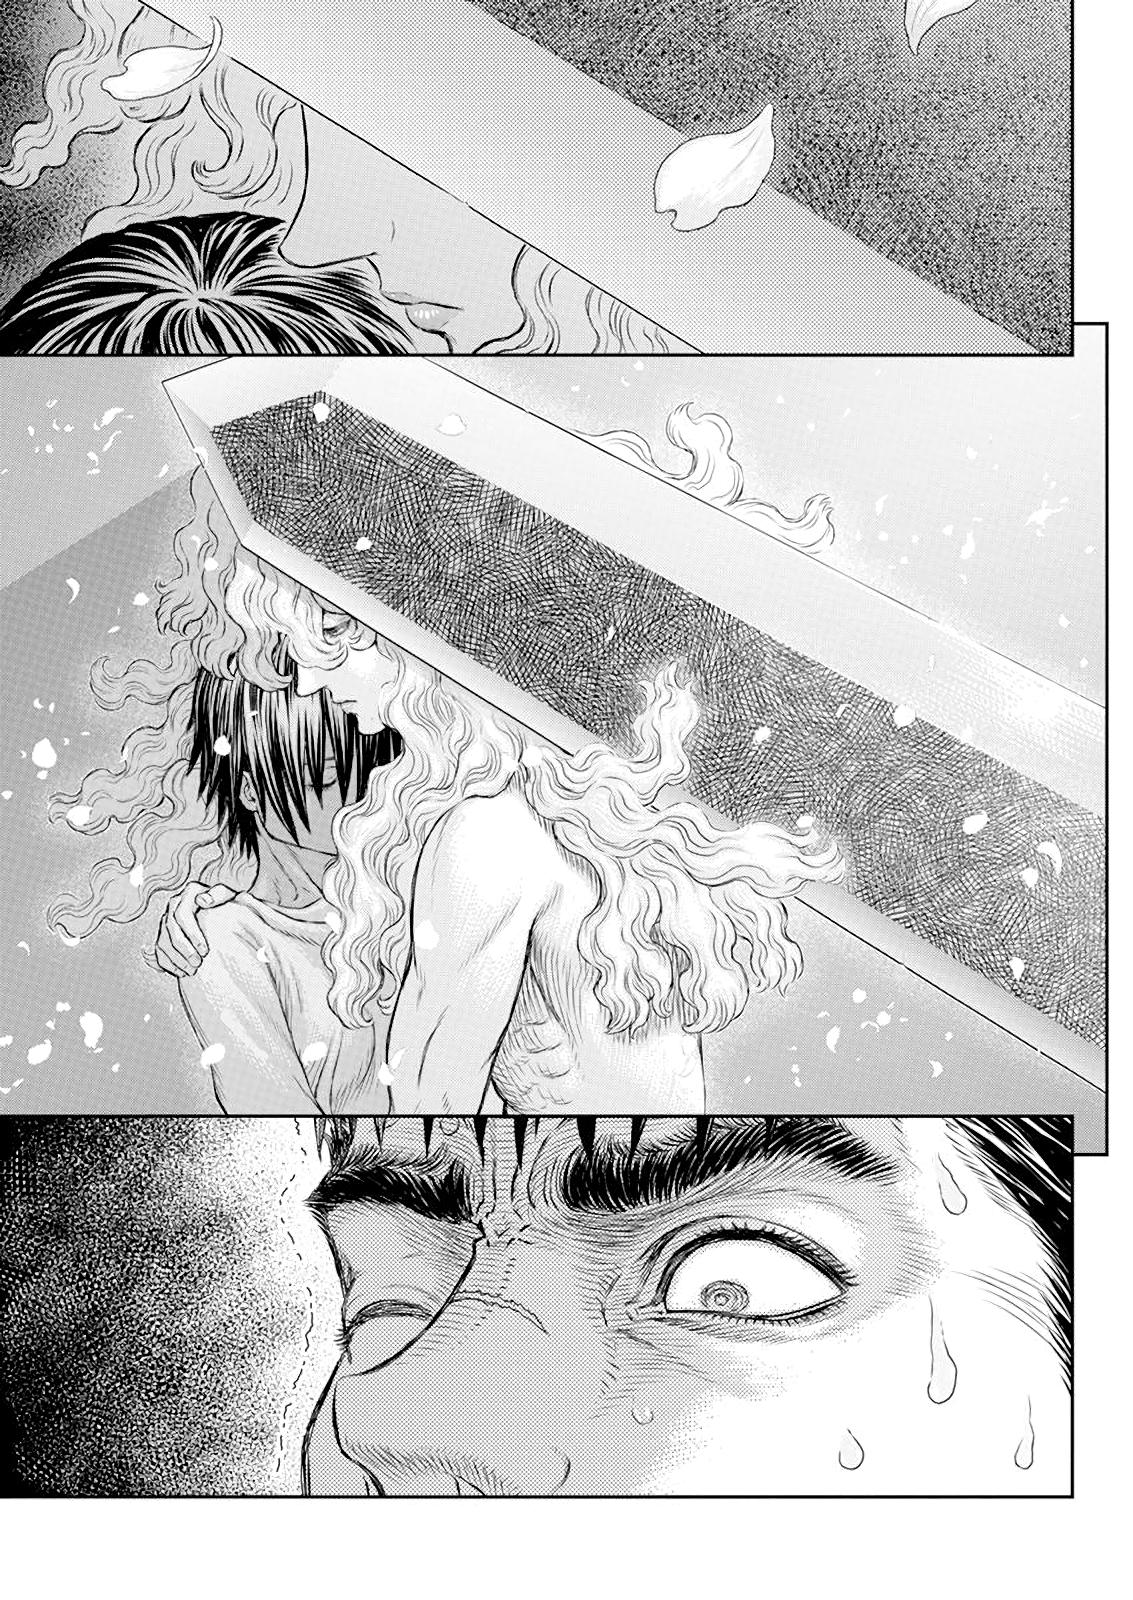 Berserk Manga Chapter 367 image 09